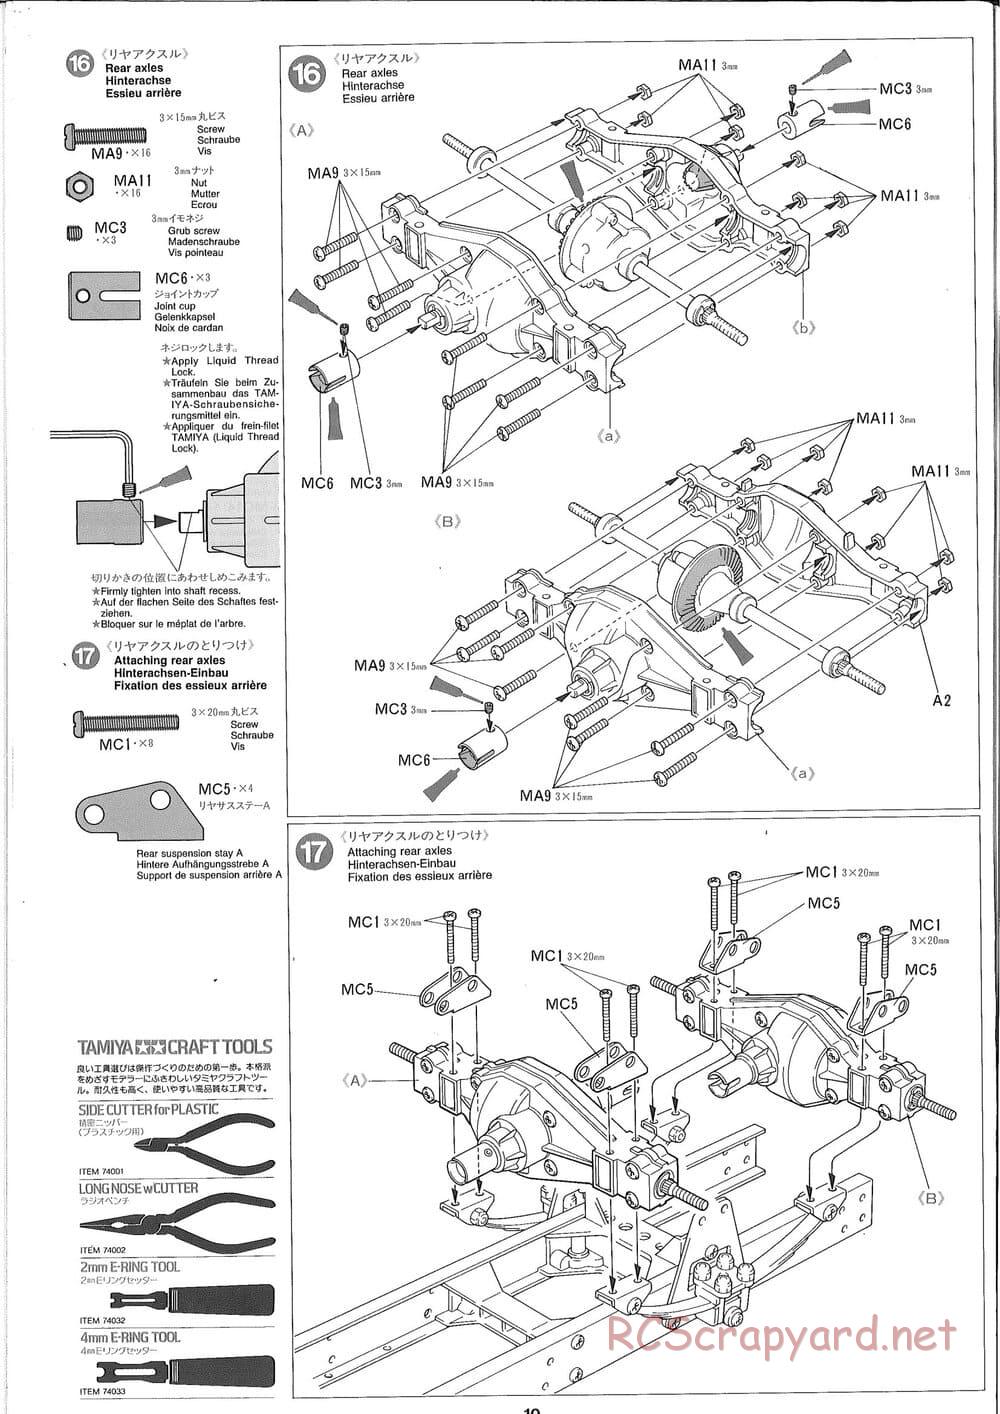 Tamiya - Ford Aeromax - Manual - Page 10